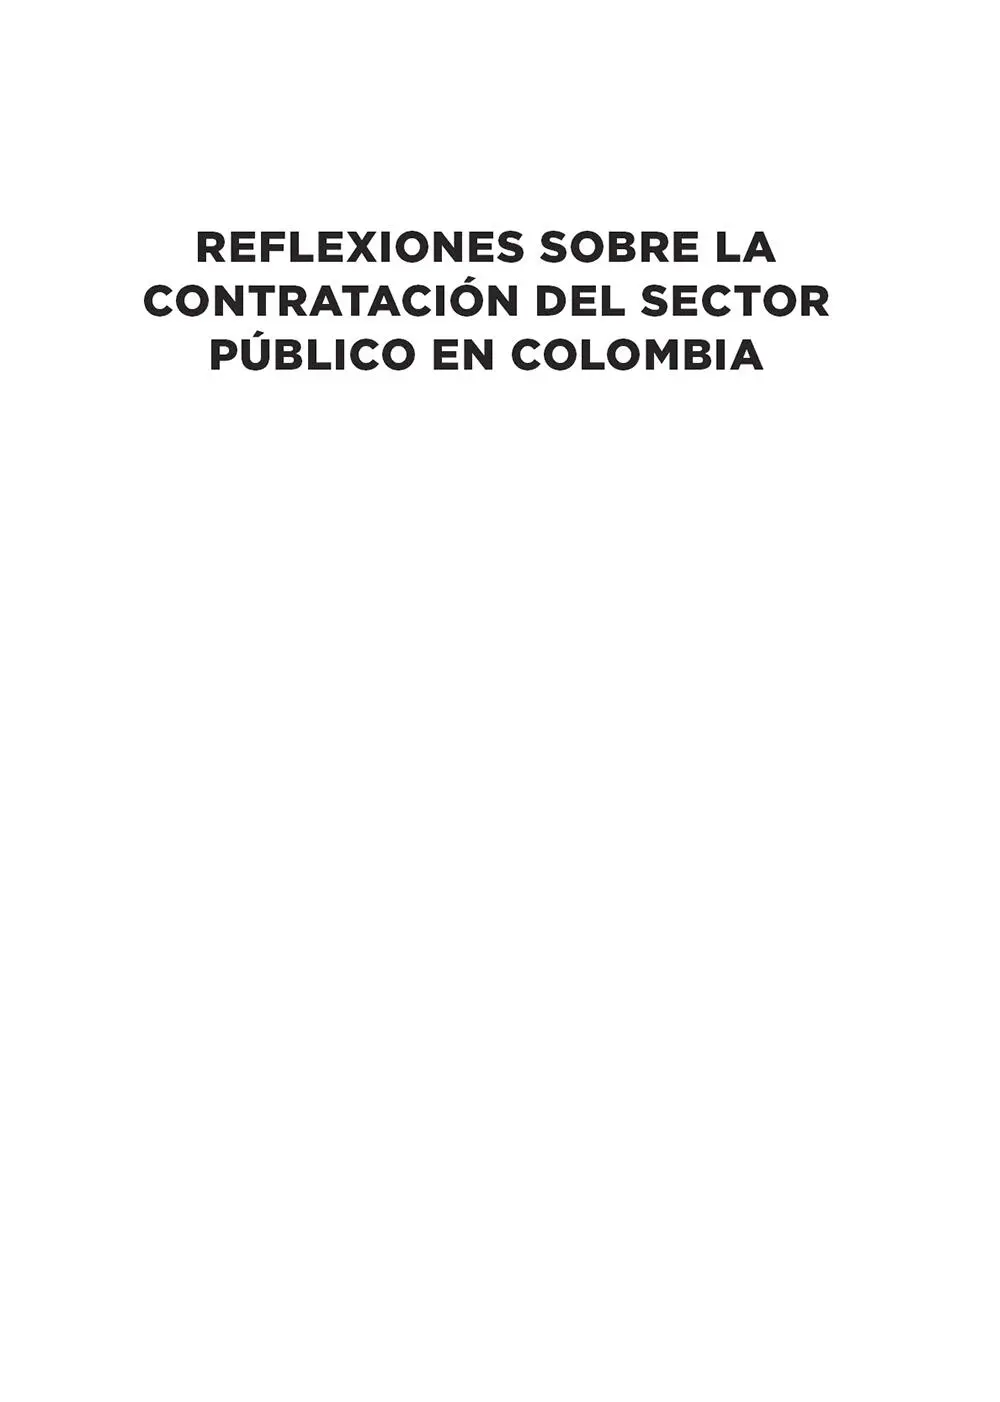 CATALOGACIÓN EN LA PUBLICACIÓN UNIVERSIDAD NACIONAL DE COLOMBIA Reflexiones - фото 1